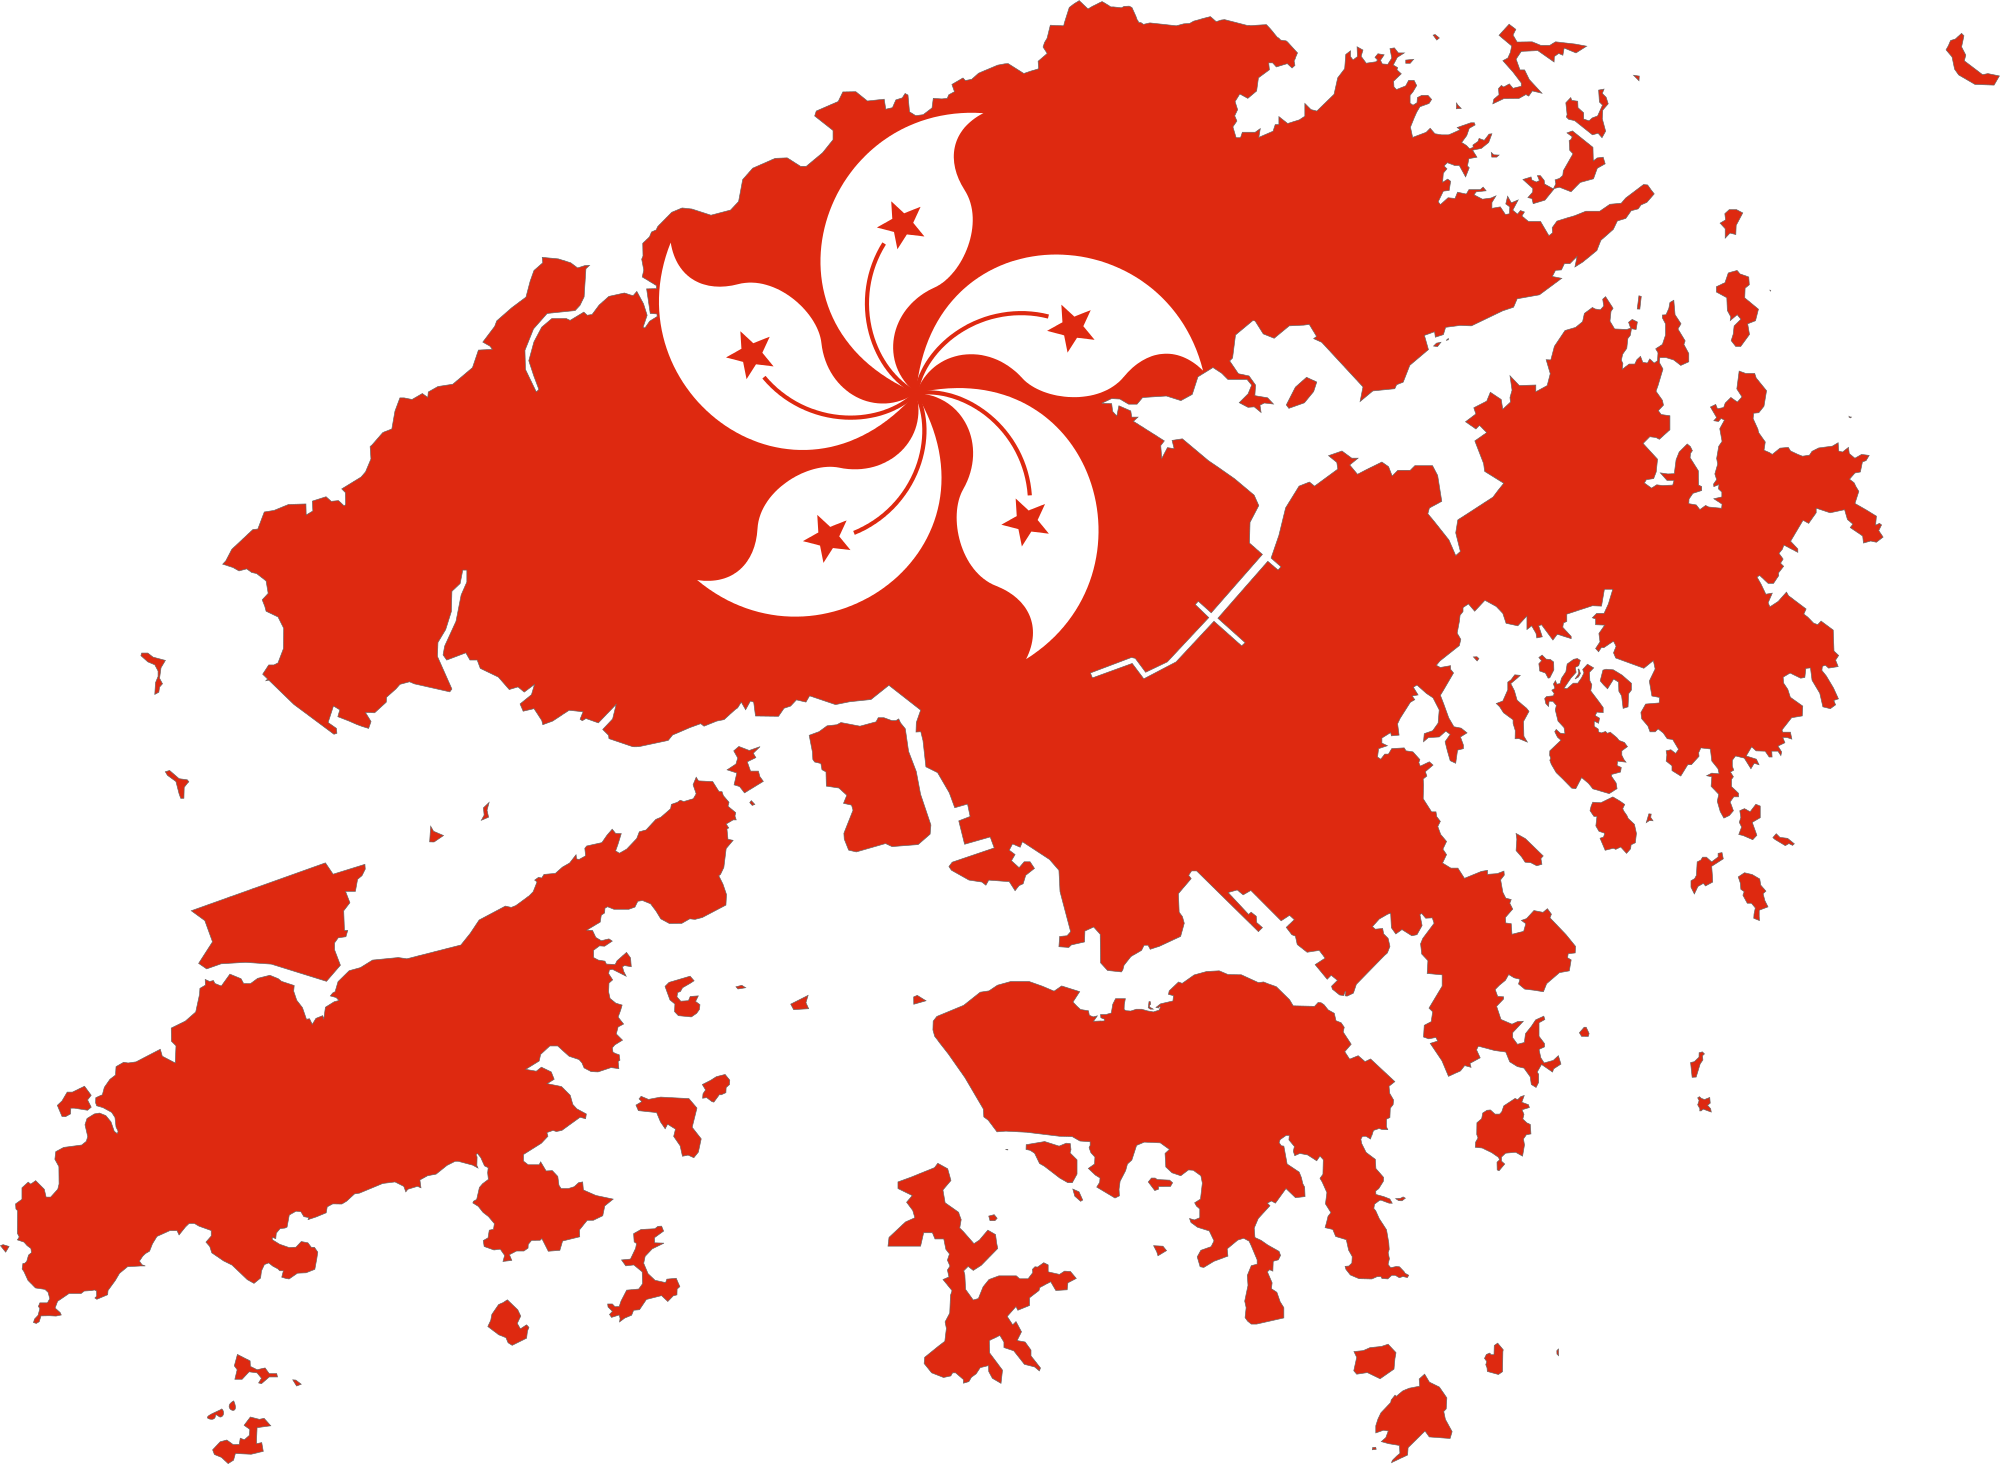 Hong Kong SAR China